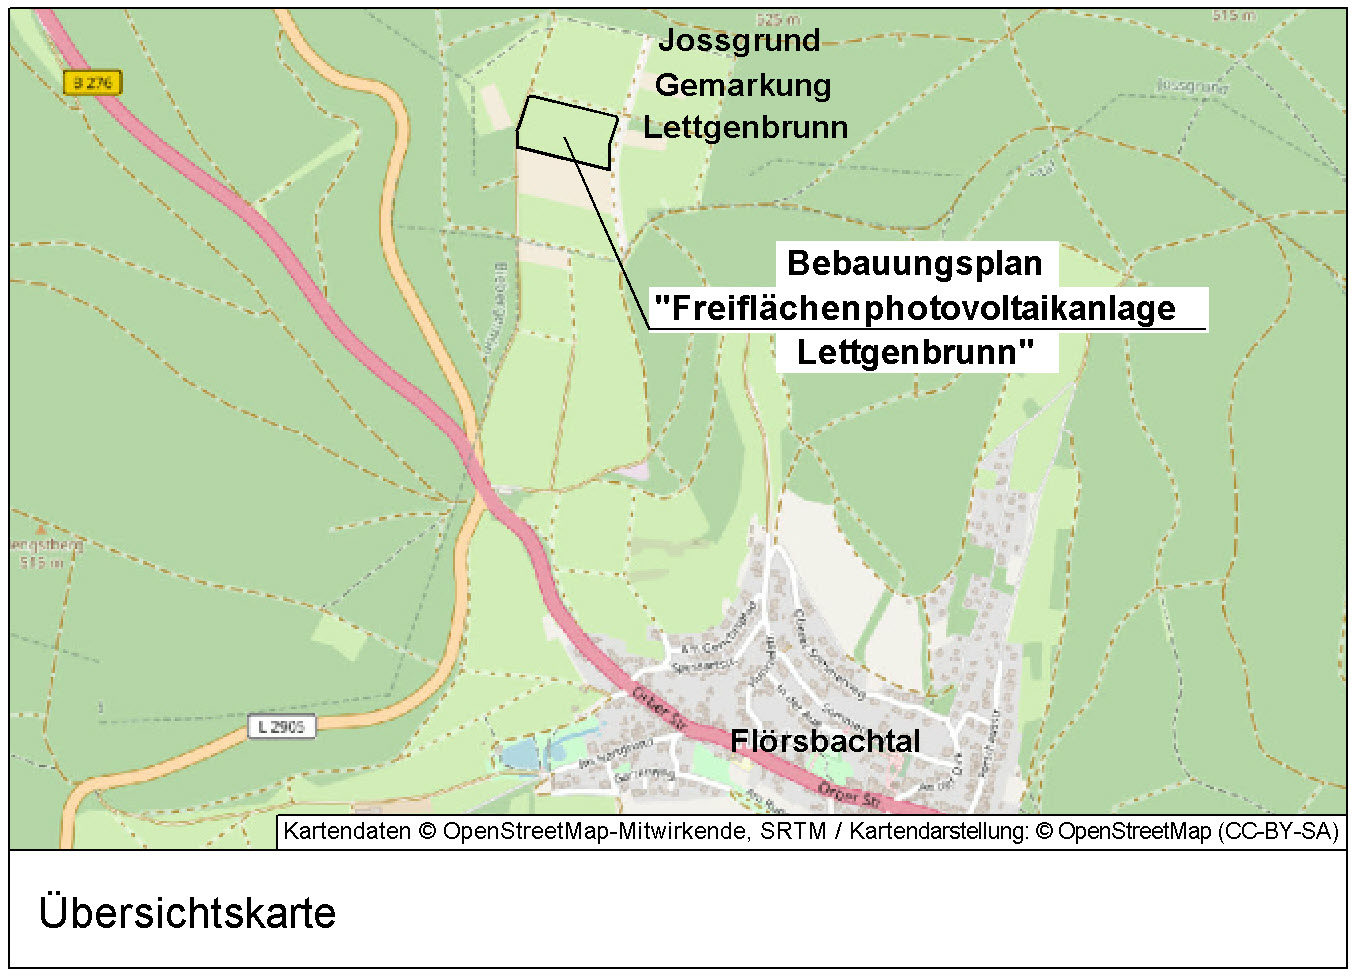 Bebauungsplan „Freiflächenphotovoltaikanlage Lettgenbrunn“ im Parallelverfahren zur Änderung des Flächennutzungsplans der Gemeinde Jossgrund